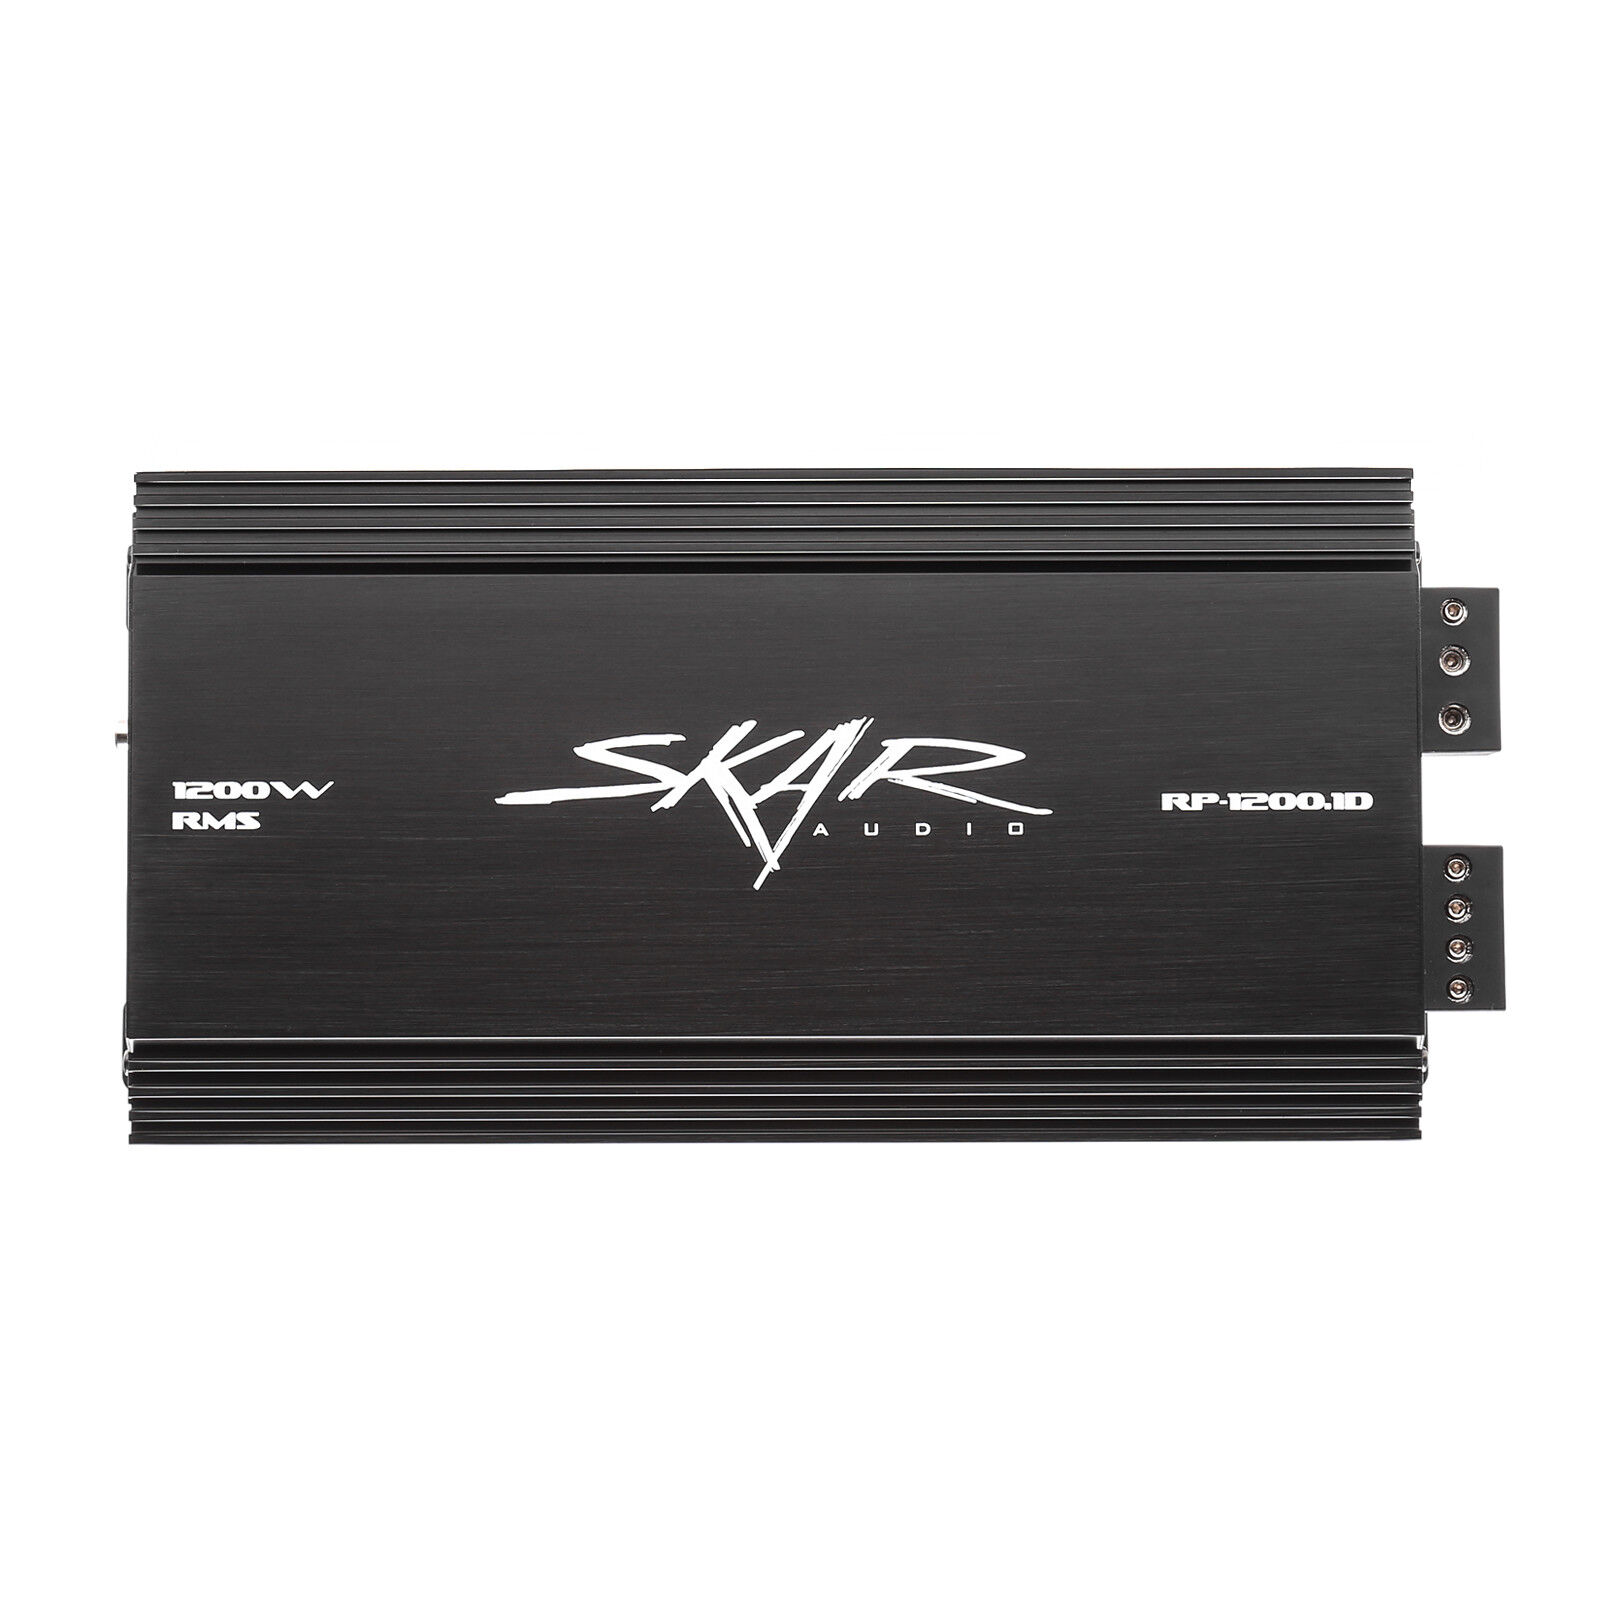 NEW SKAR AUDIO RP-1200.1D 1600 WATT MAX POWER CLASS D MONOBLOCK SUB AMPLIFIER